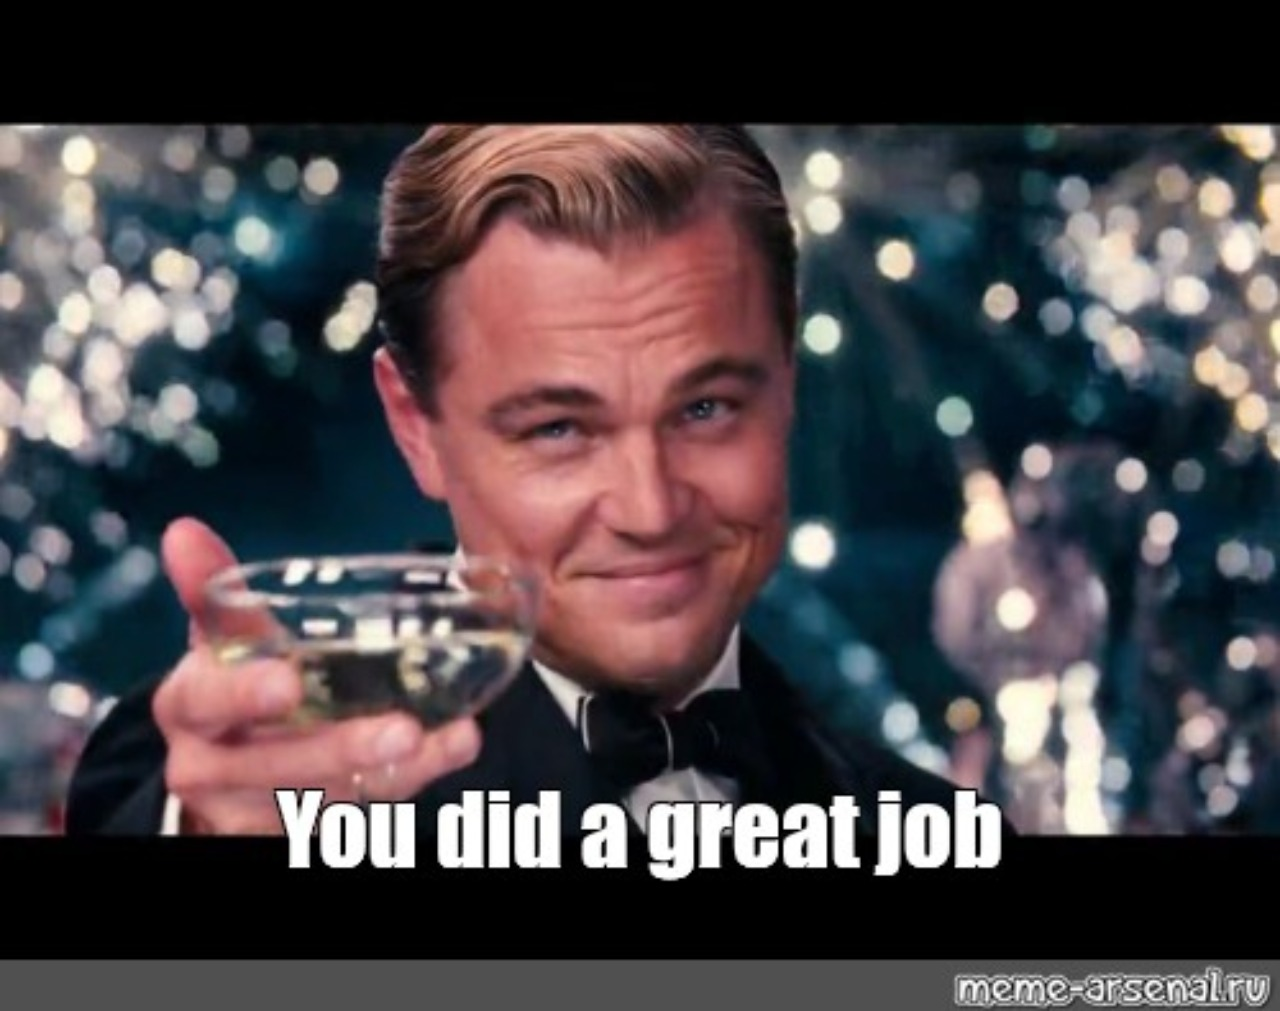 Leonardo DiCaprio erhebt das Glas für Euch: "You did a great job!"